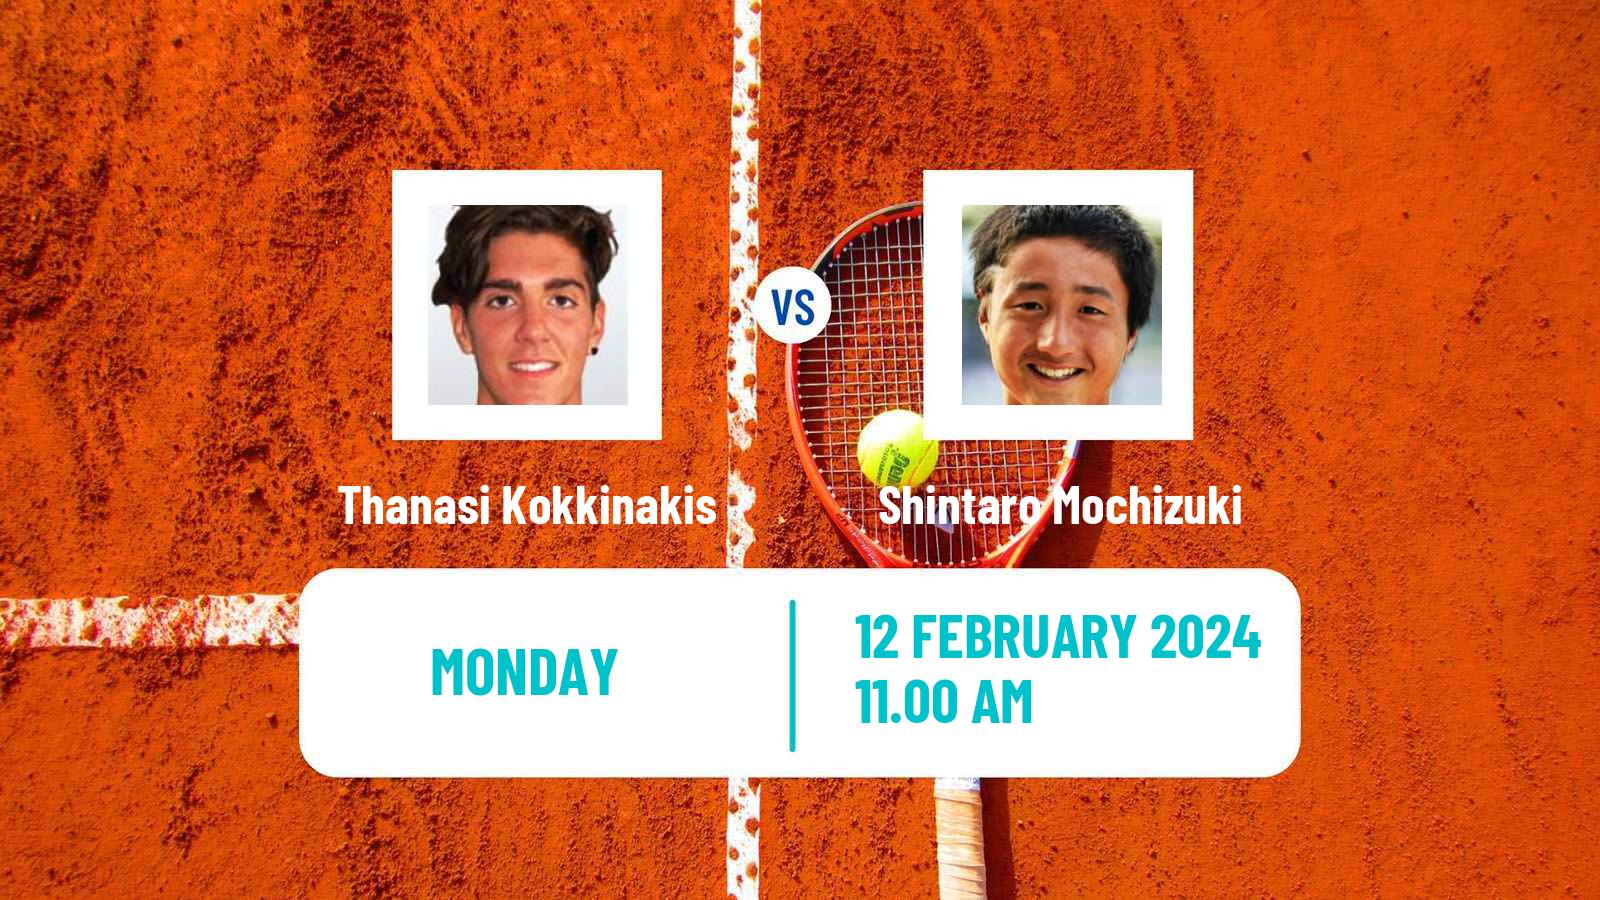 Tennis ATP Delray Beach Thanasi Kokkinakis - Shintaro Mochizuki